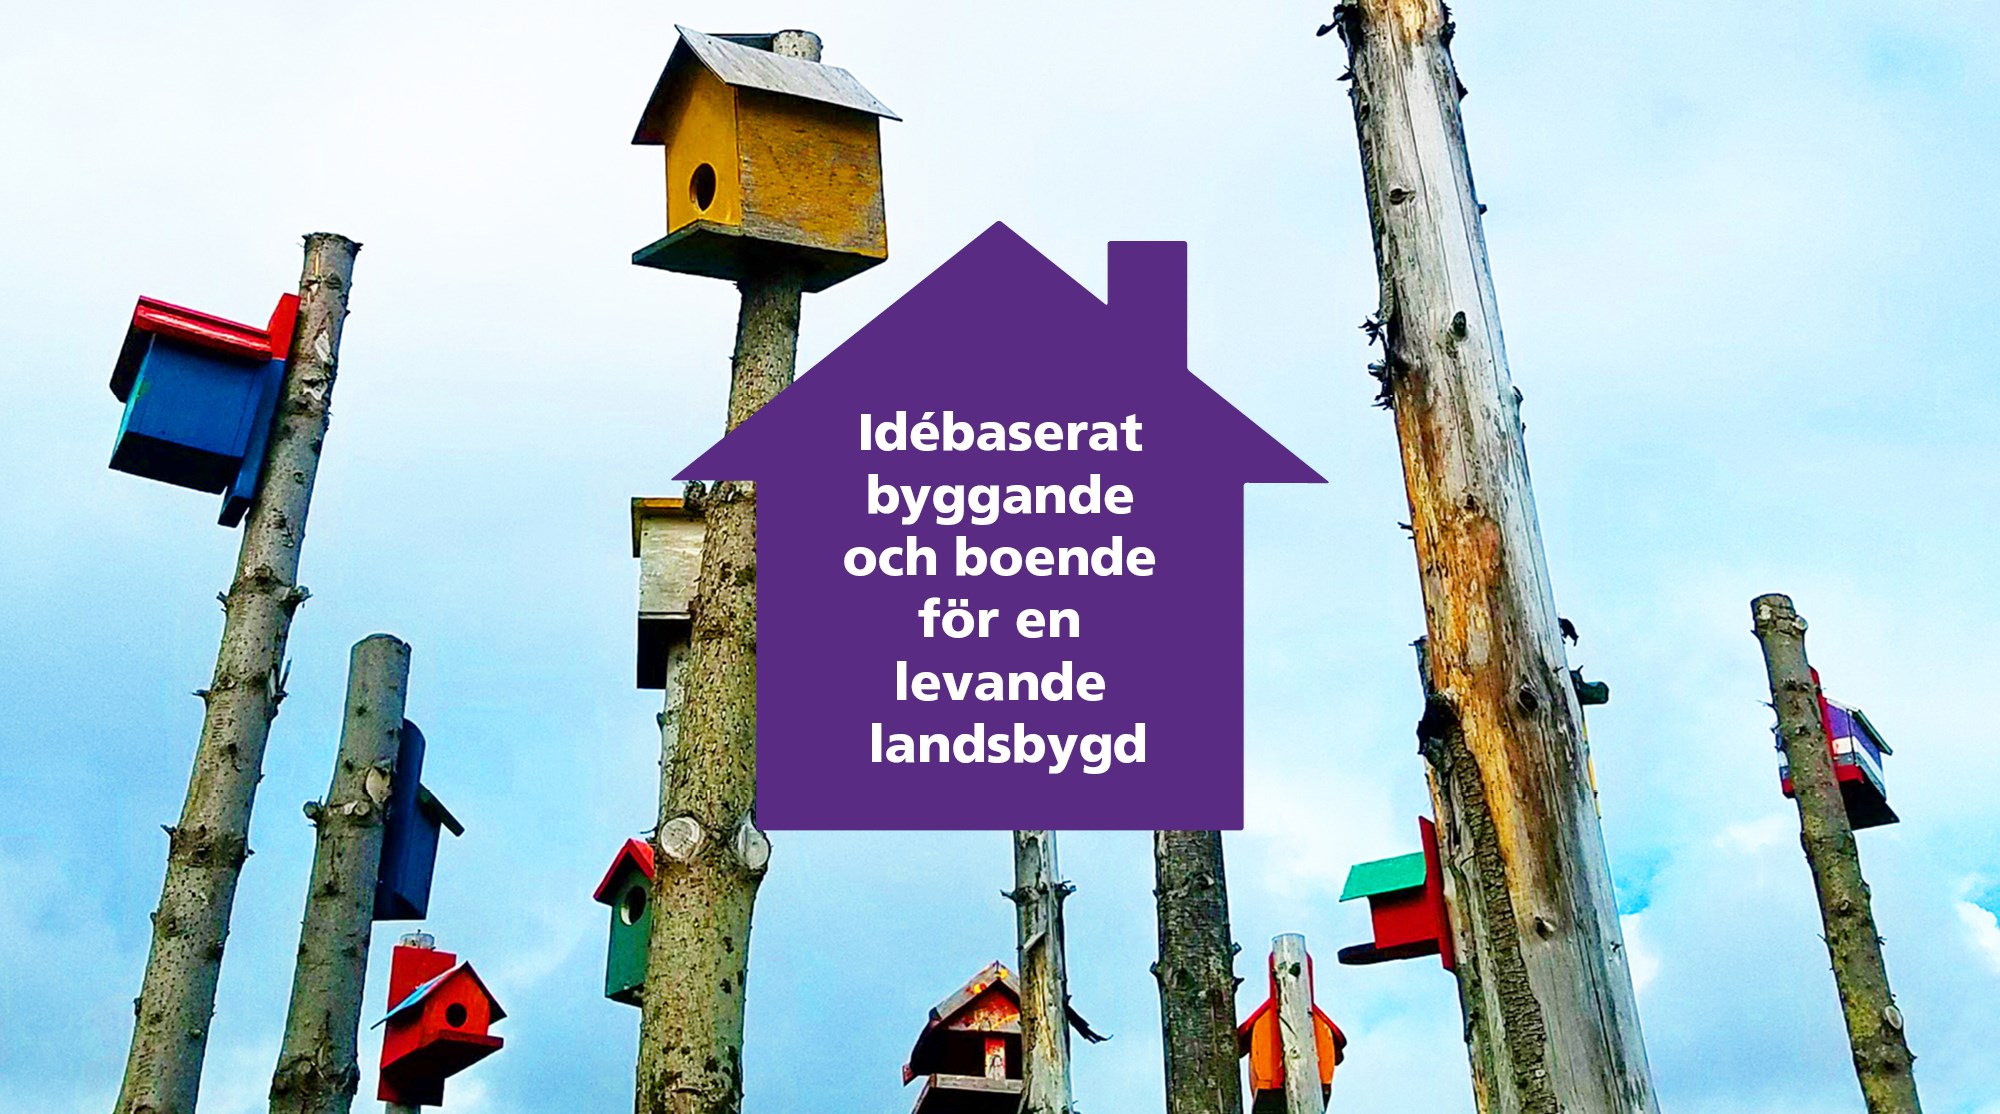 En lila tonplatta formad som ett hus med texten "Idébaserat byggande och boende för en levande landsbygd" i vitt. I bakgrunden syns ett foto med fågelholkar i olika färger på torrakor.